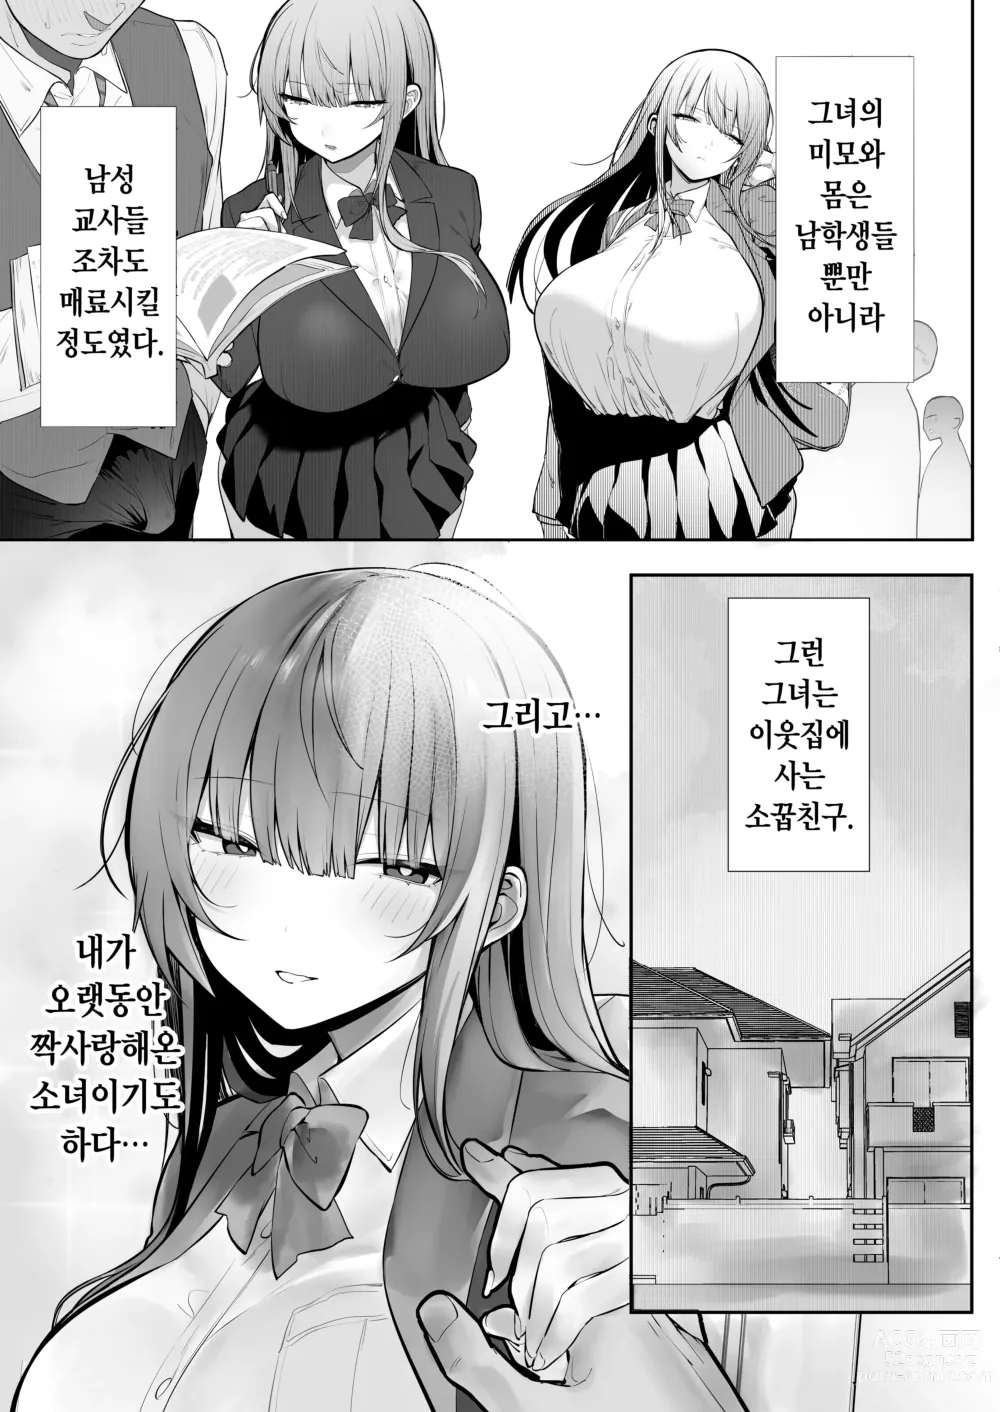 Page 4 of doujinshi Ani ni Netorare Ochita Tsubaki｜양오빠에게 빼앗겨 타락한 츠바키